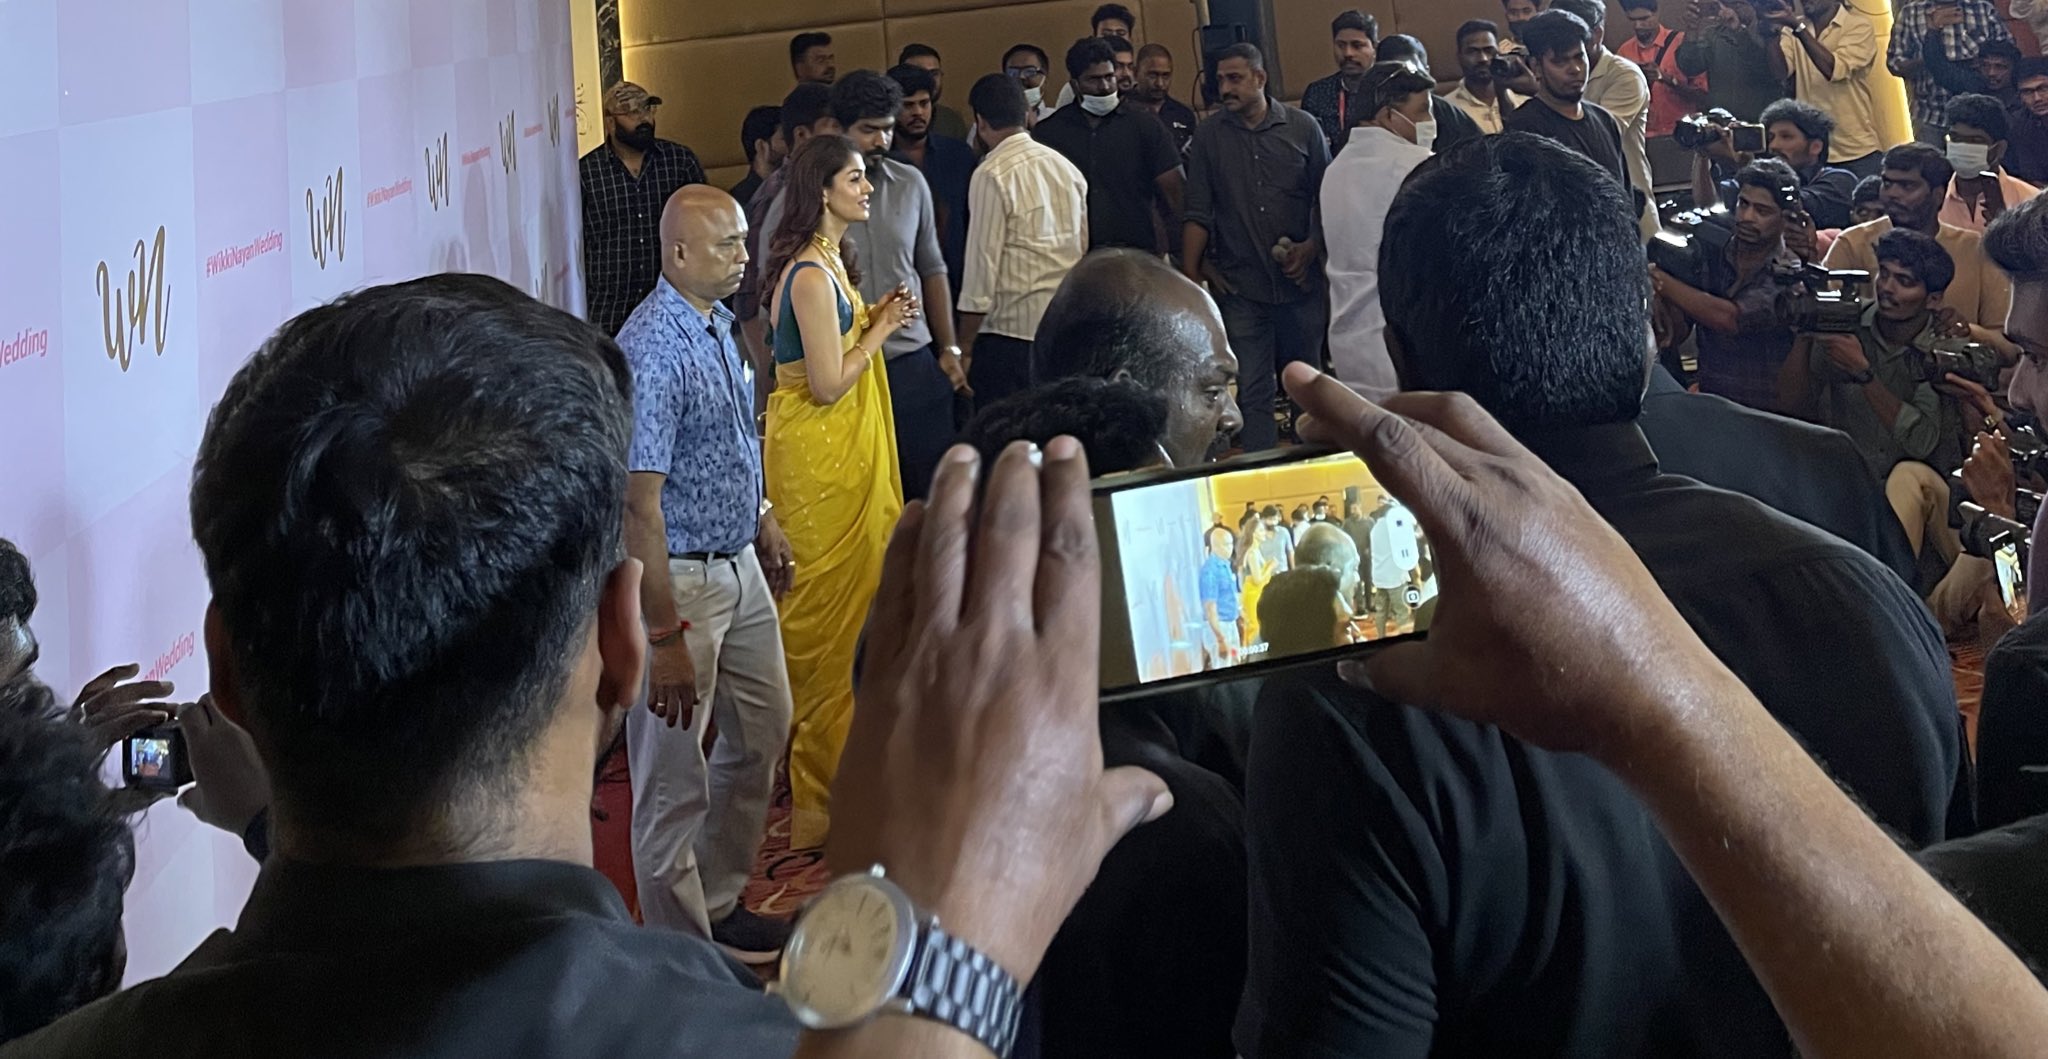 Vignesh shivan and nayanthara at press meet after marriage photos viral